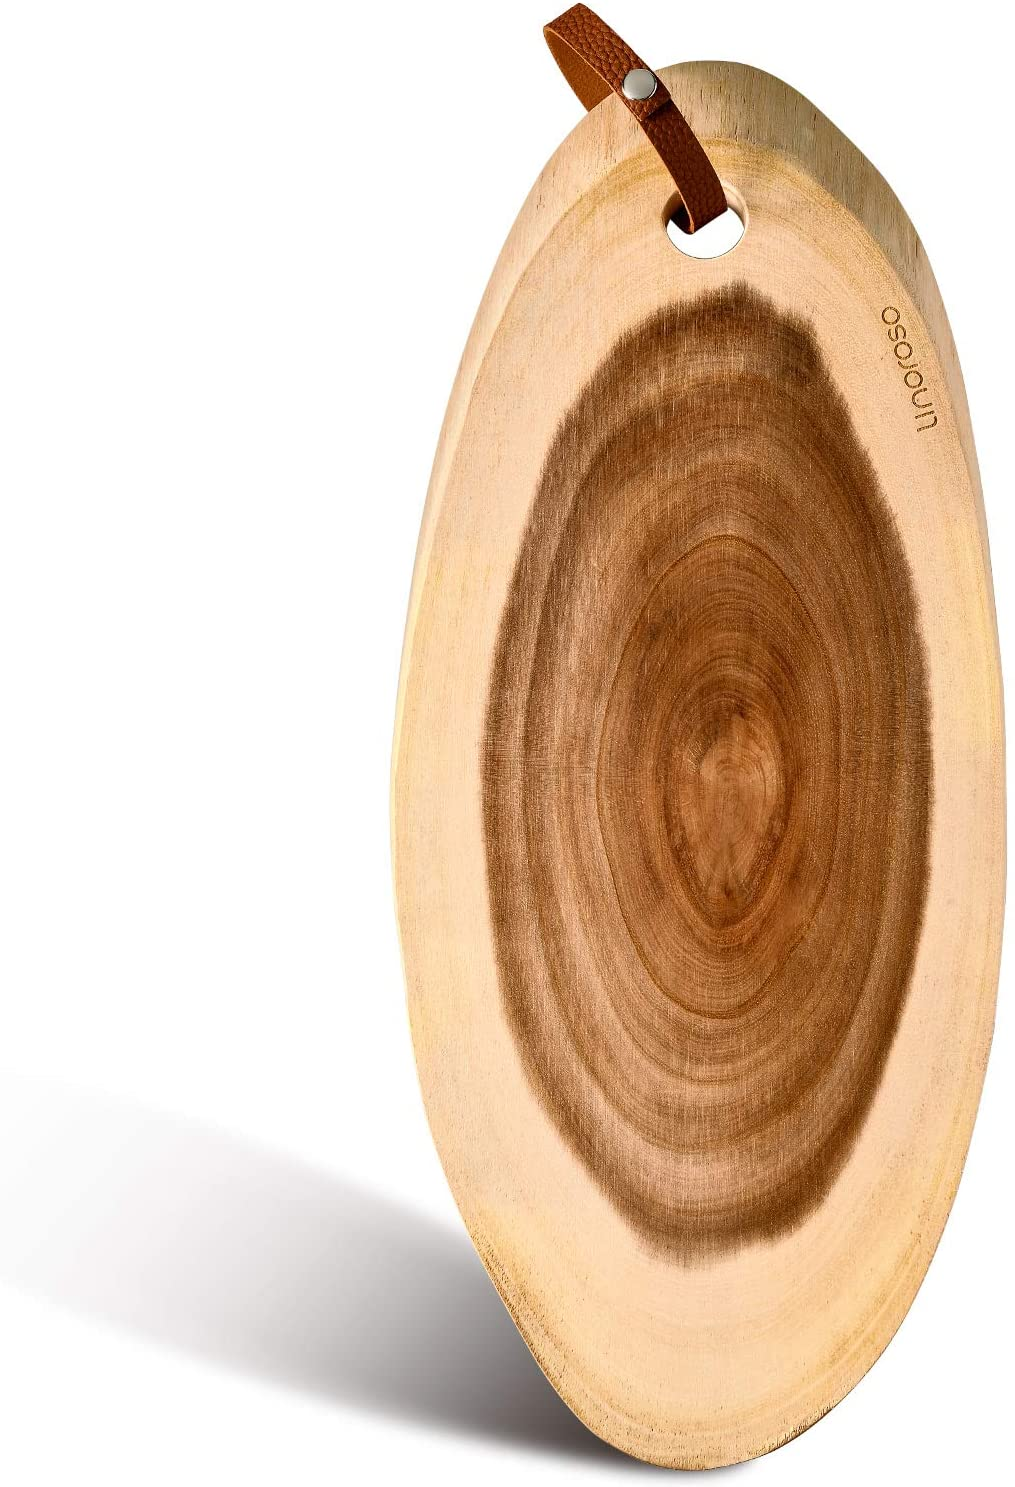 Linoroso Serving board - Acacia - Natural wood slice